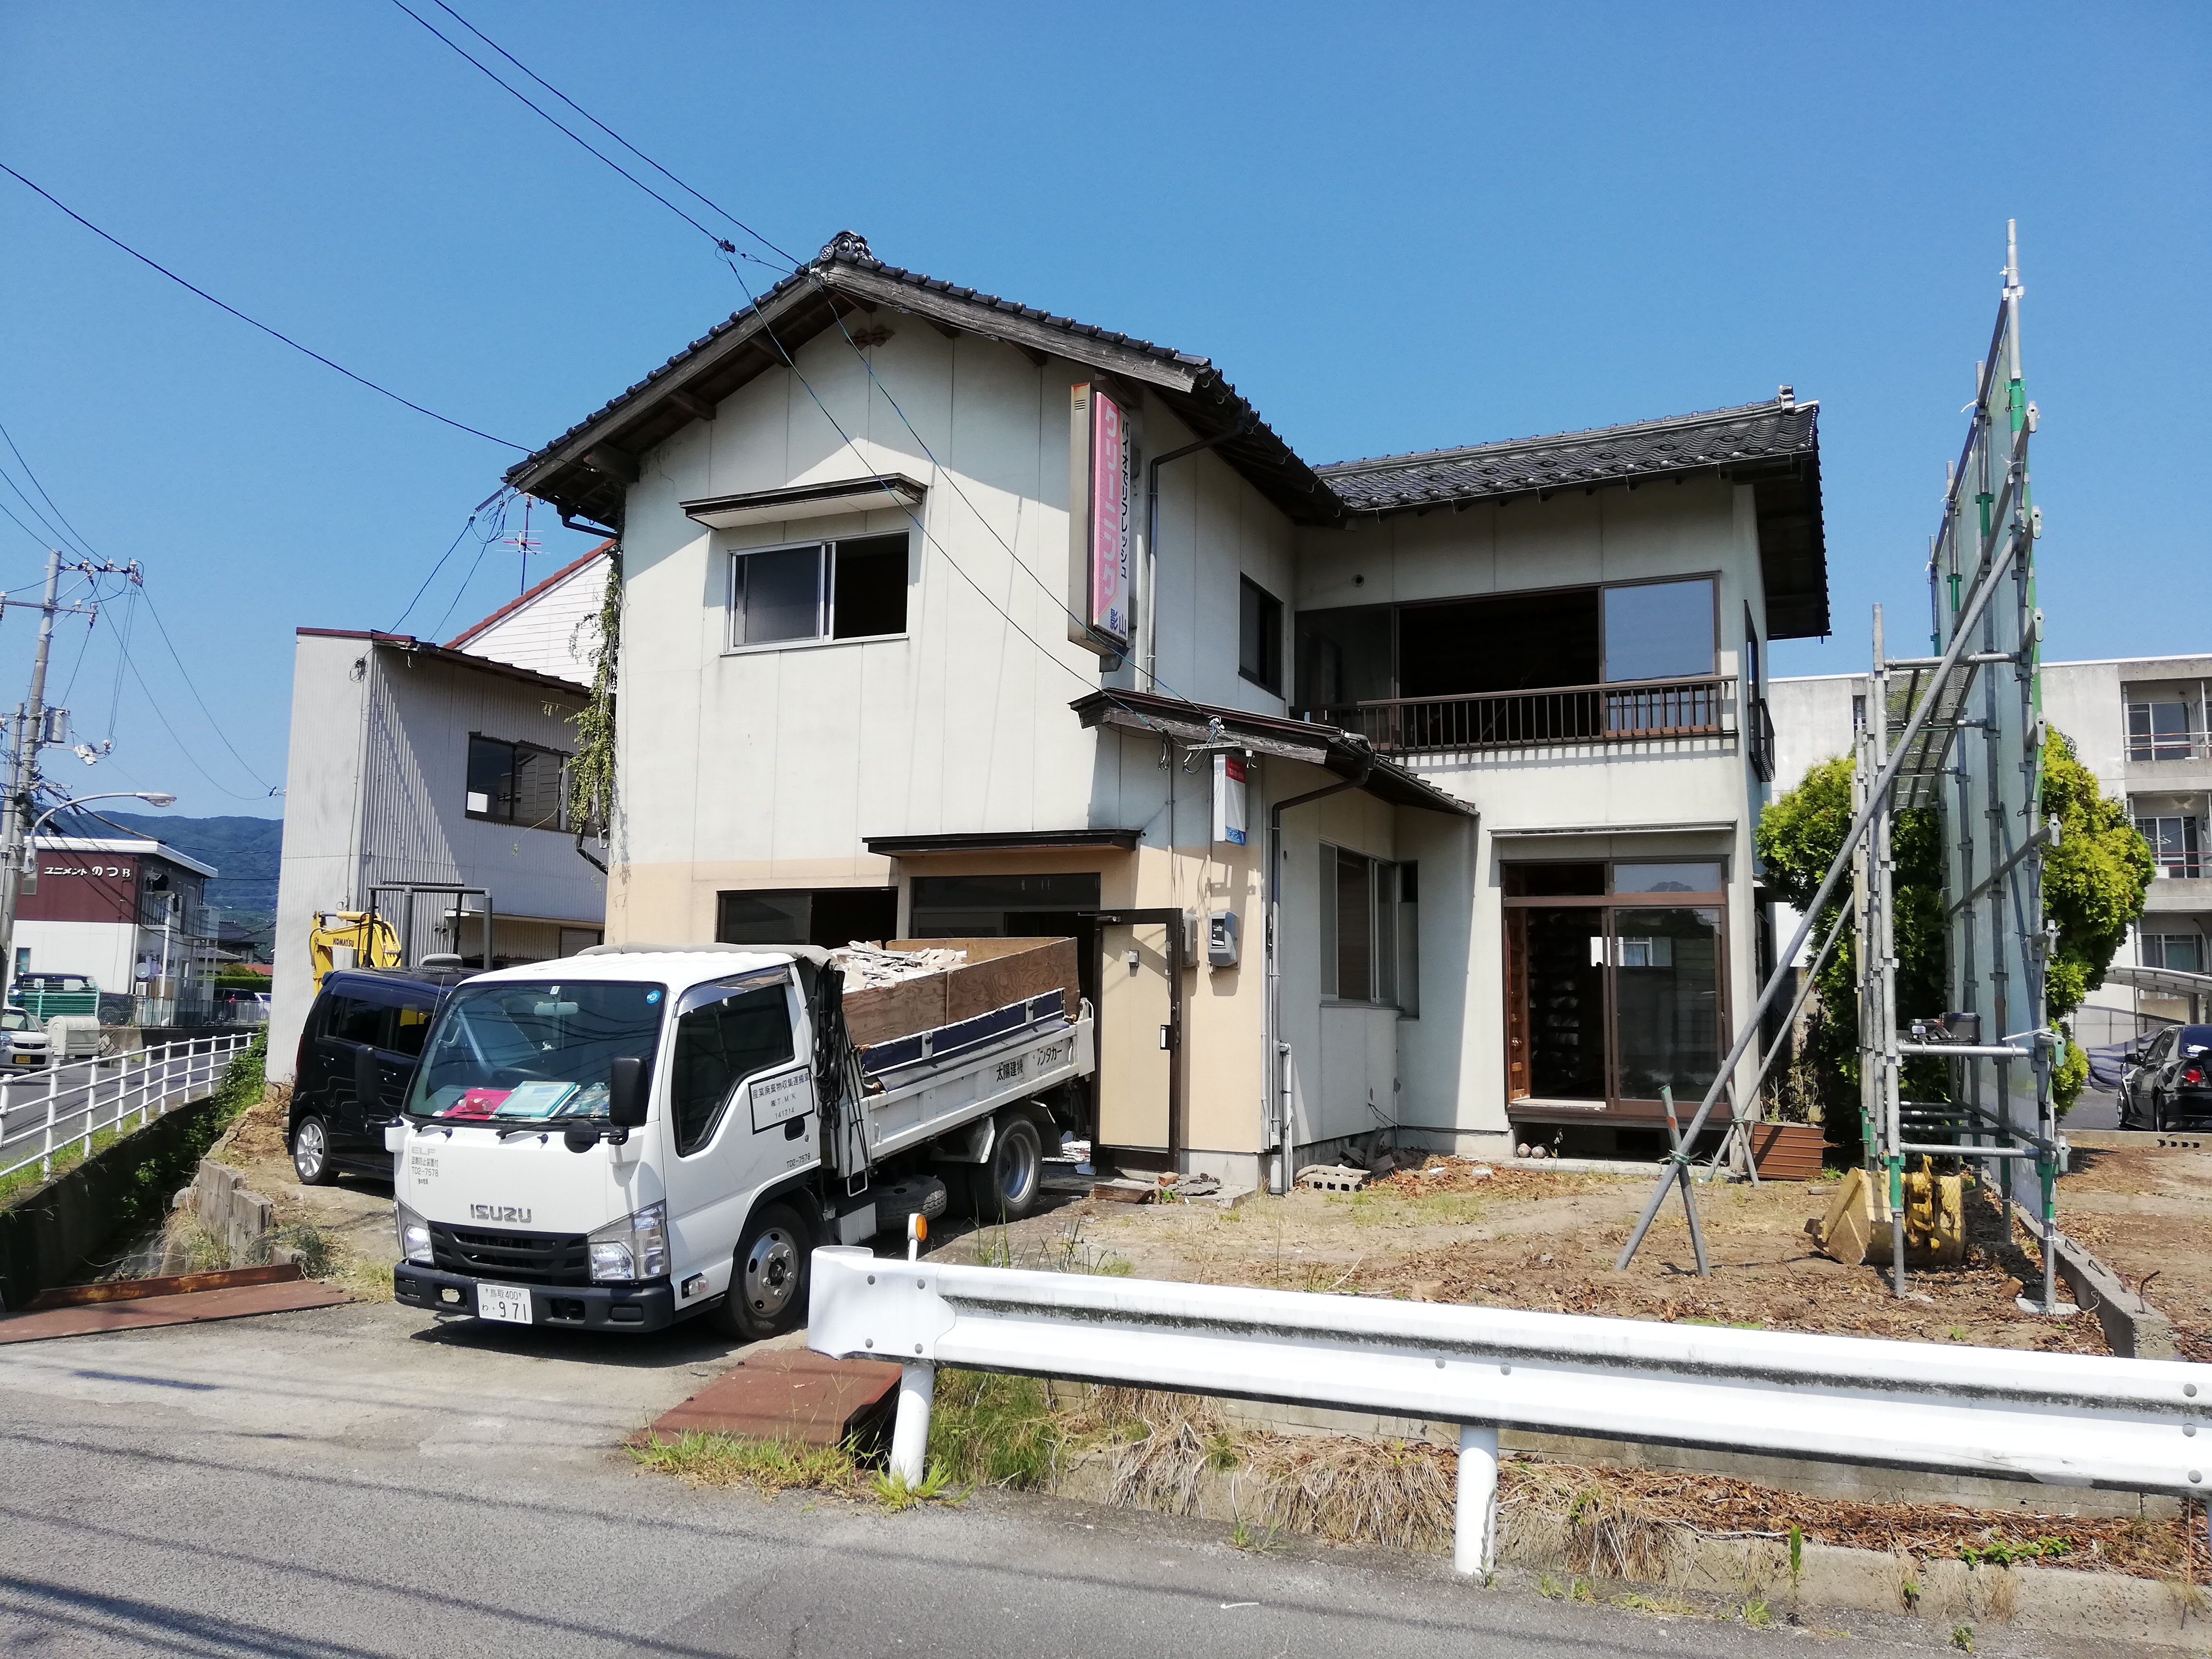 松江市西川津町 中古物件解体中 改装計画は 住宅のリフォーム リノベーションのプロ集団です